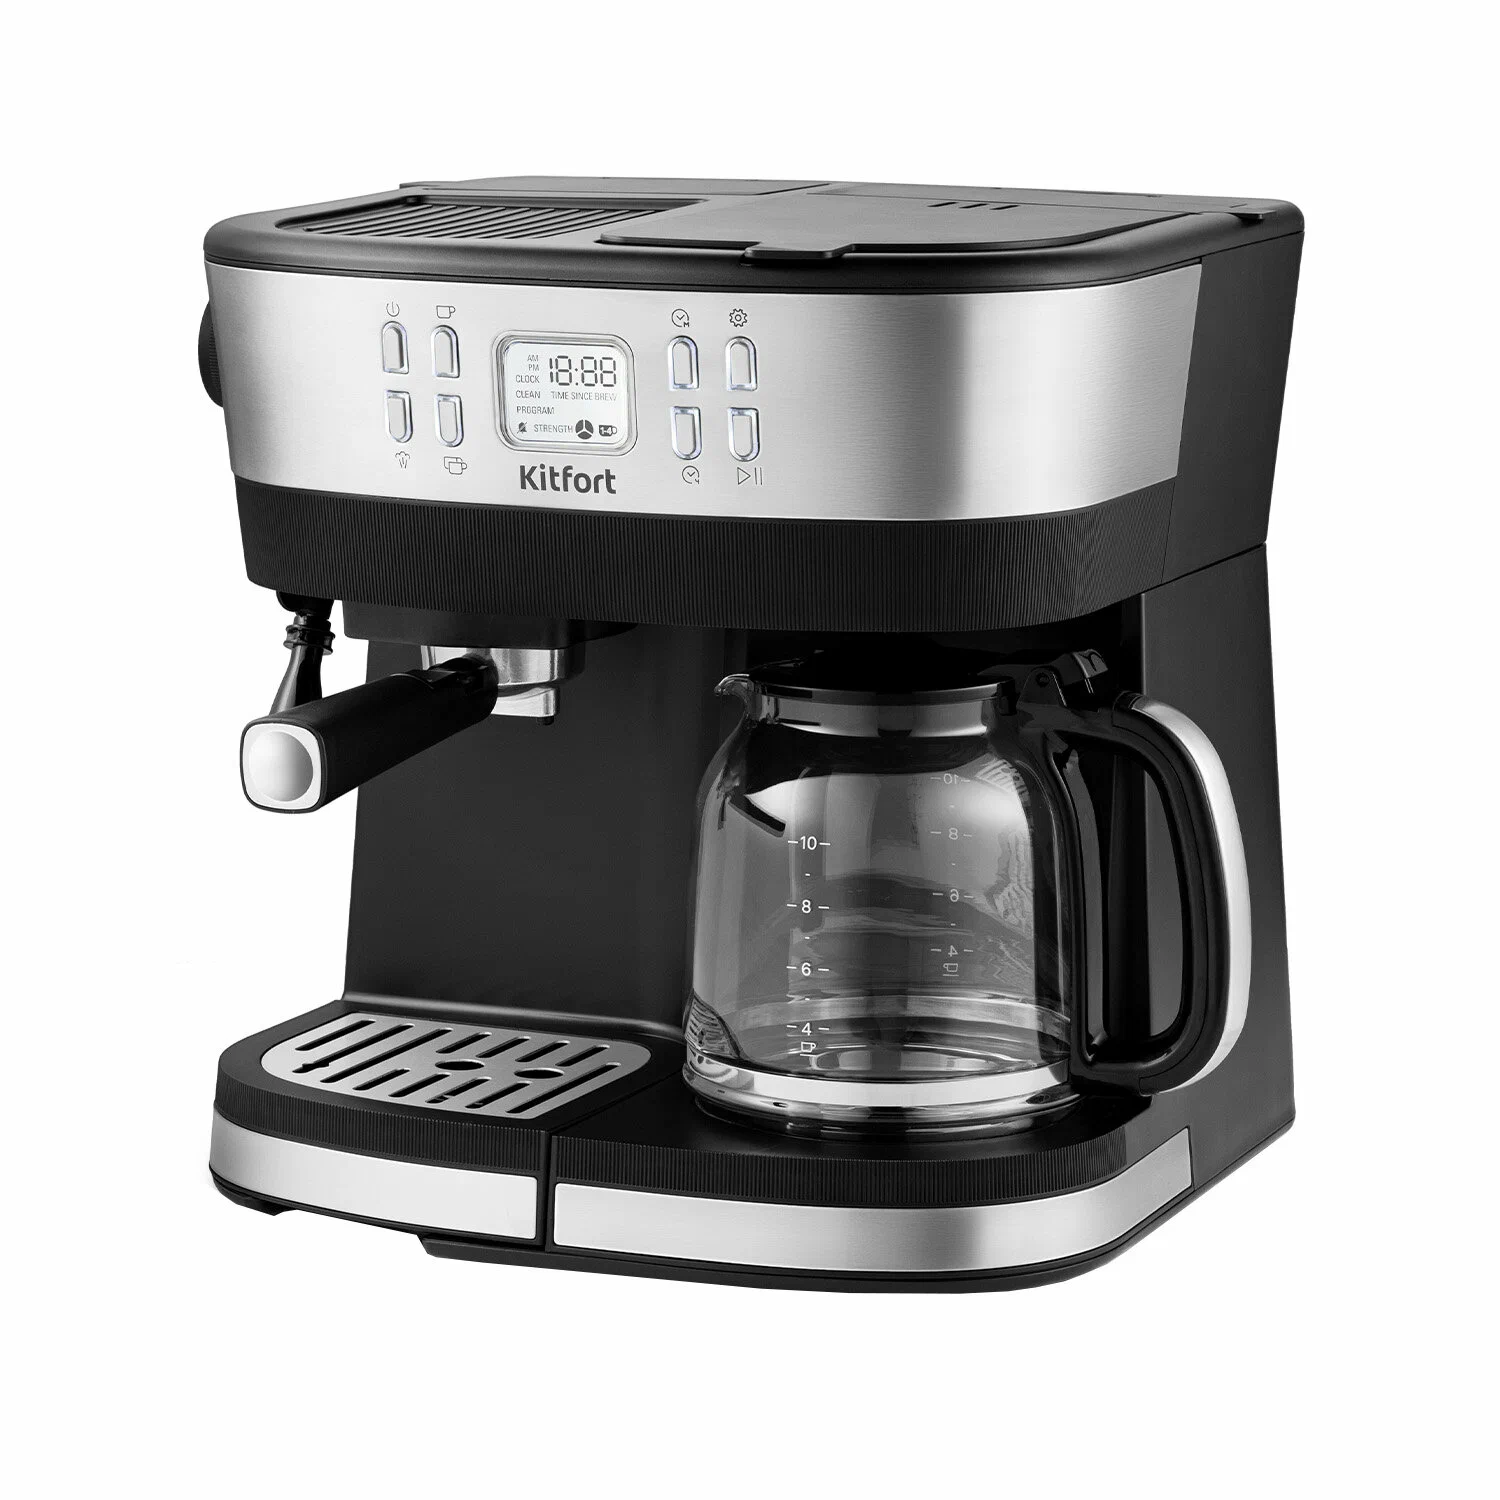 Кофеварка рожковая и капельная Kitfort КТ-771, 2.02 кВт, кофе молотый, 1.5 л/1.5 л, ручной капучинатор, дисплей, серебристый/черный (КТ-771)